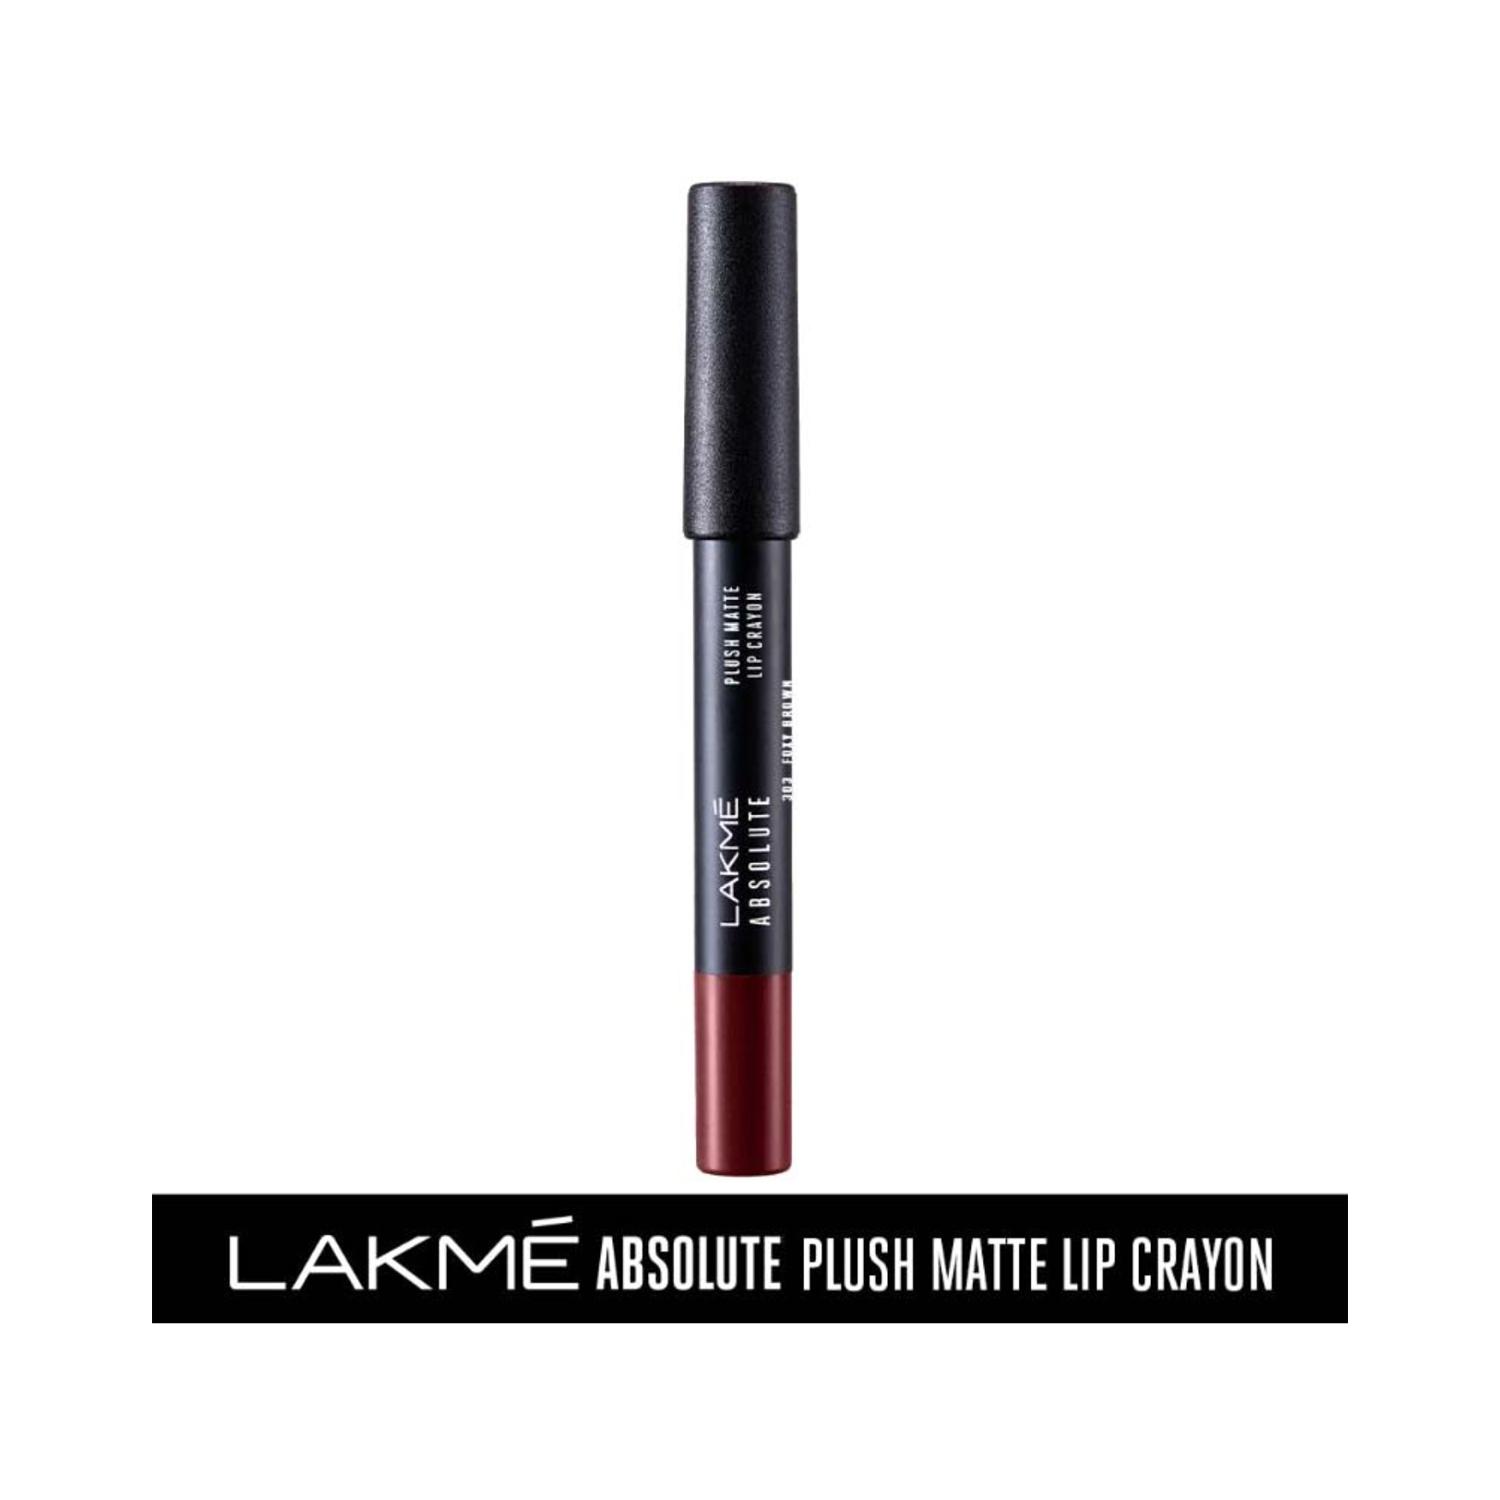 lakme absolute plush matte lip crayon - 303 foxy brown (2.8g)